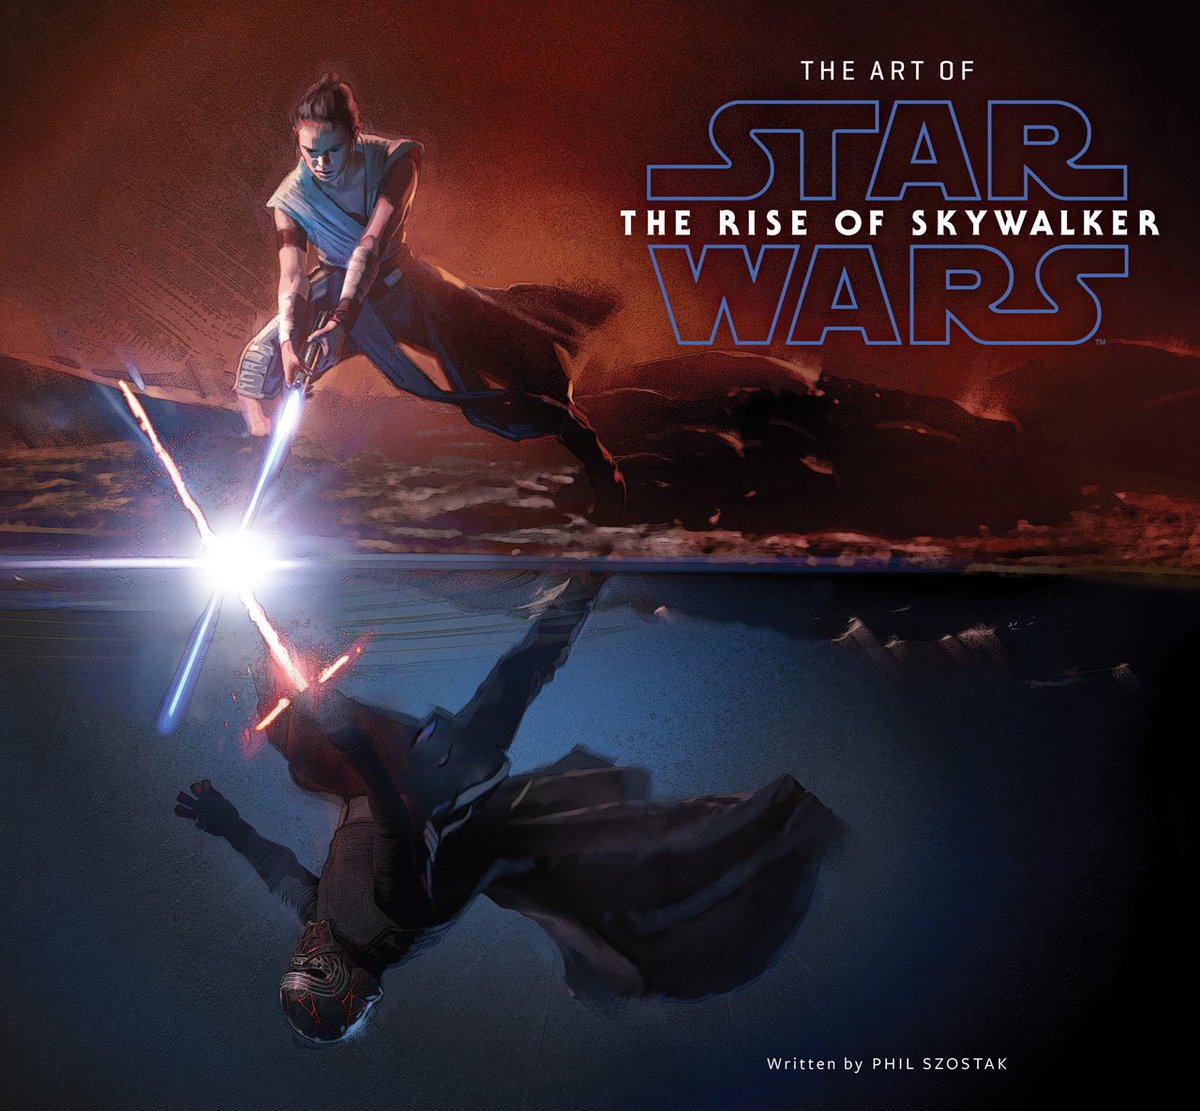 Новое изображение «Звездных войн: Эпизод IX» показывает столкновение Рей и Кайло Рена